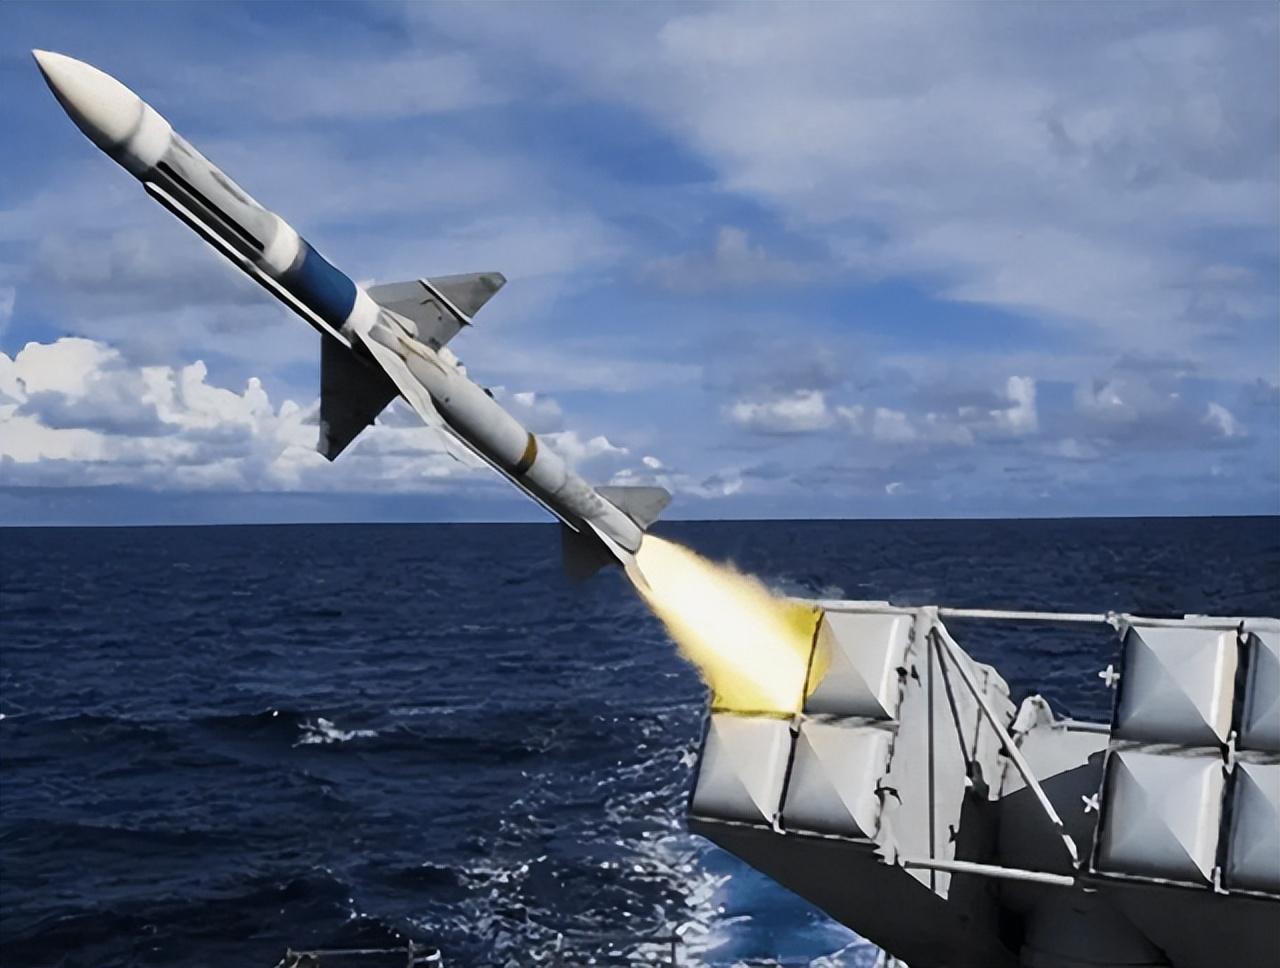 日媒称日本打算购买美国「战斧」巡航导弹,其射程超 1000 公里,谈判已